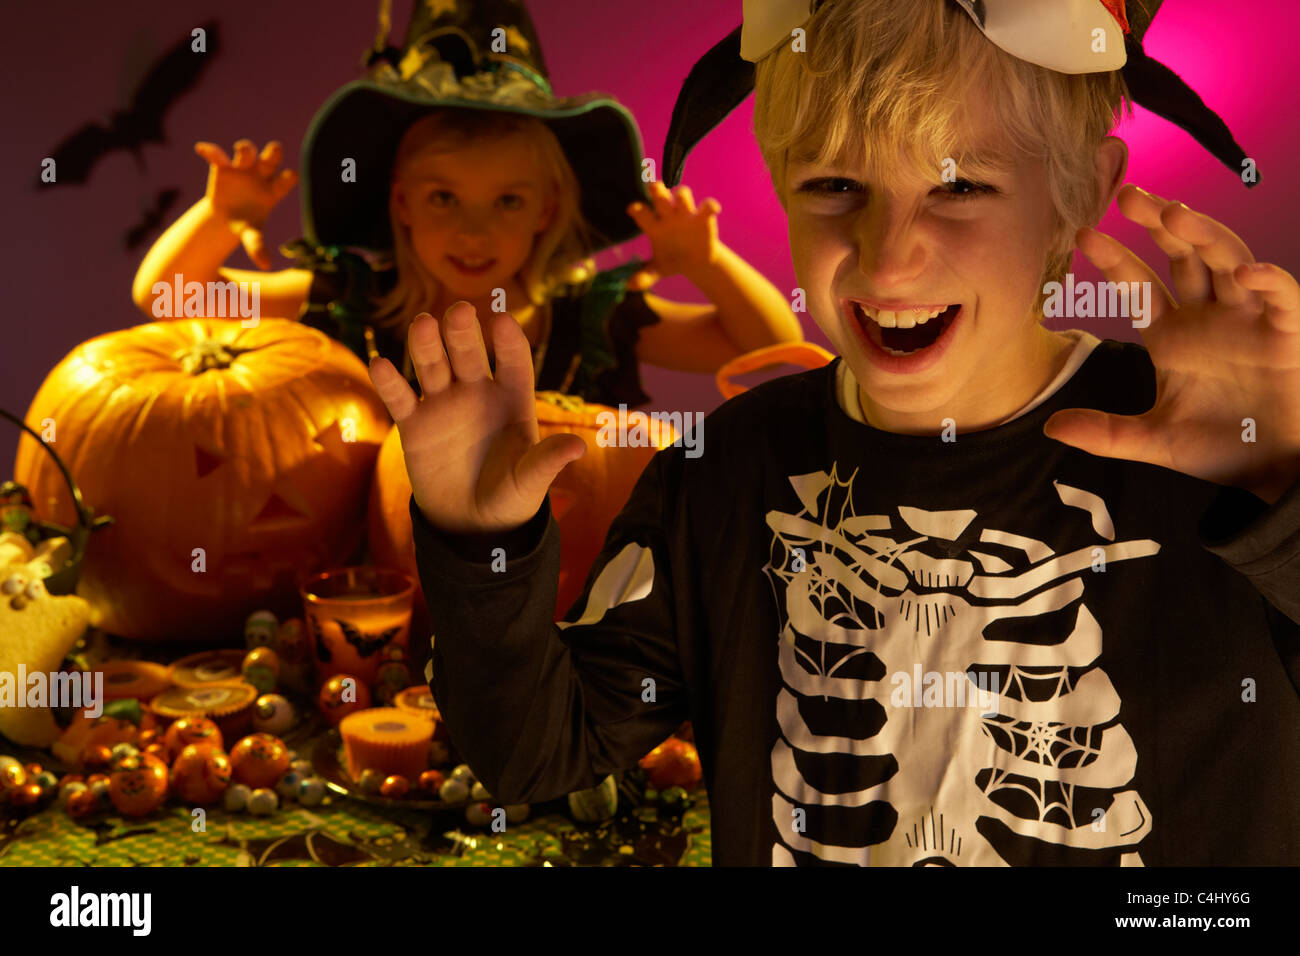 Fiesta de Halloween con niños que vestían trajes asustando Foto de stock